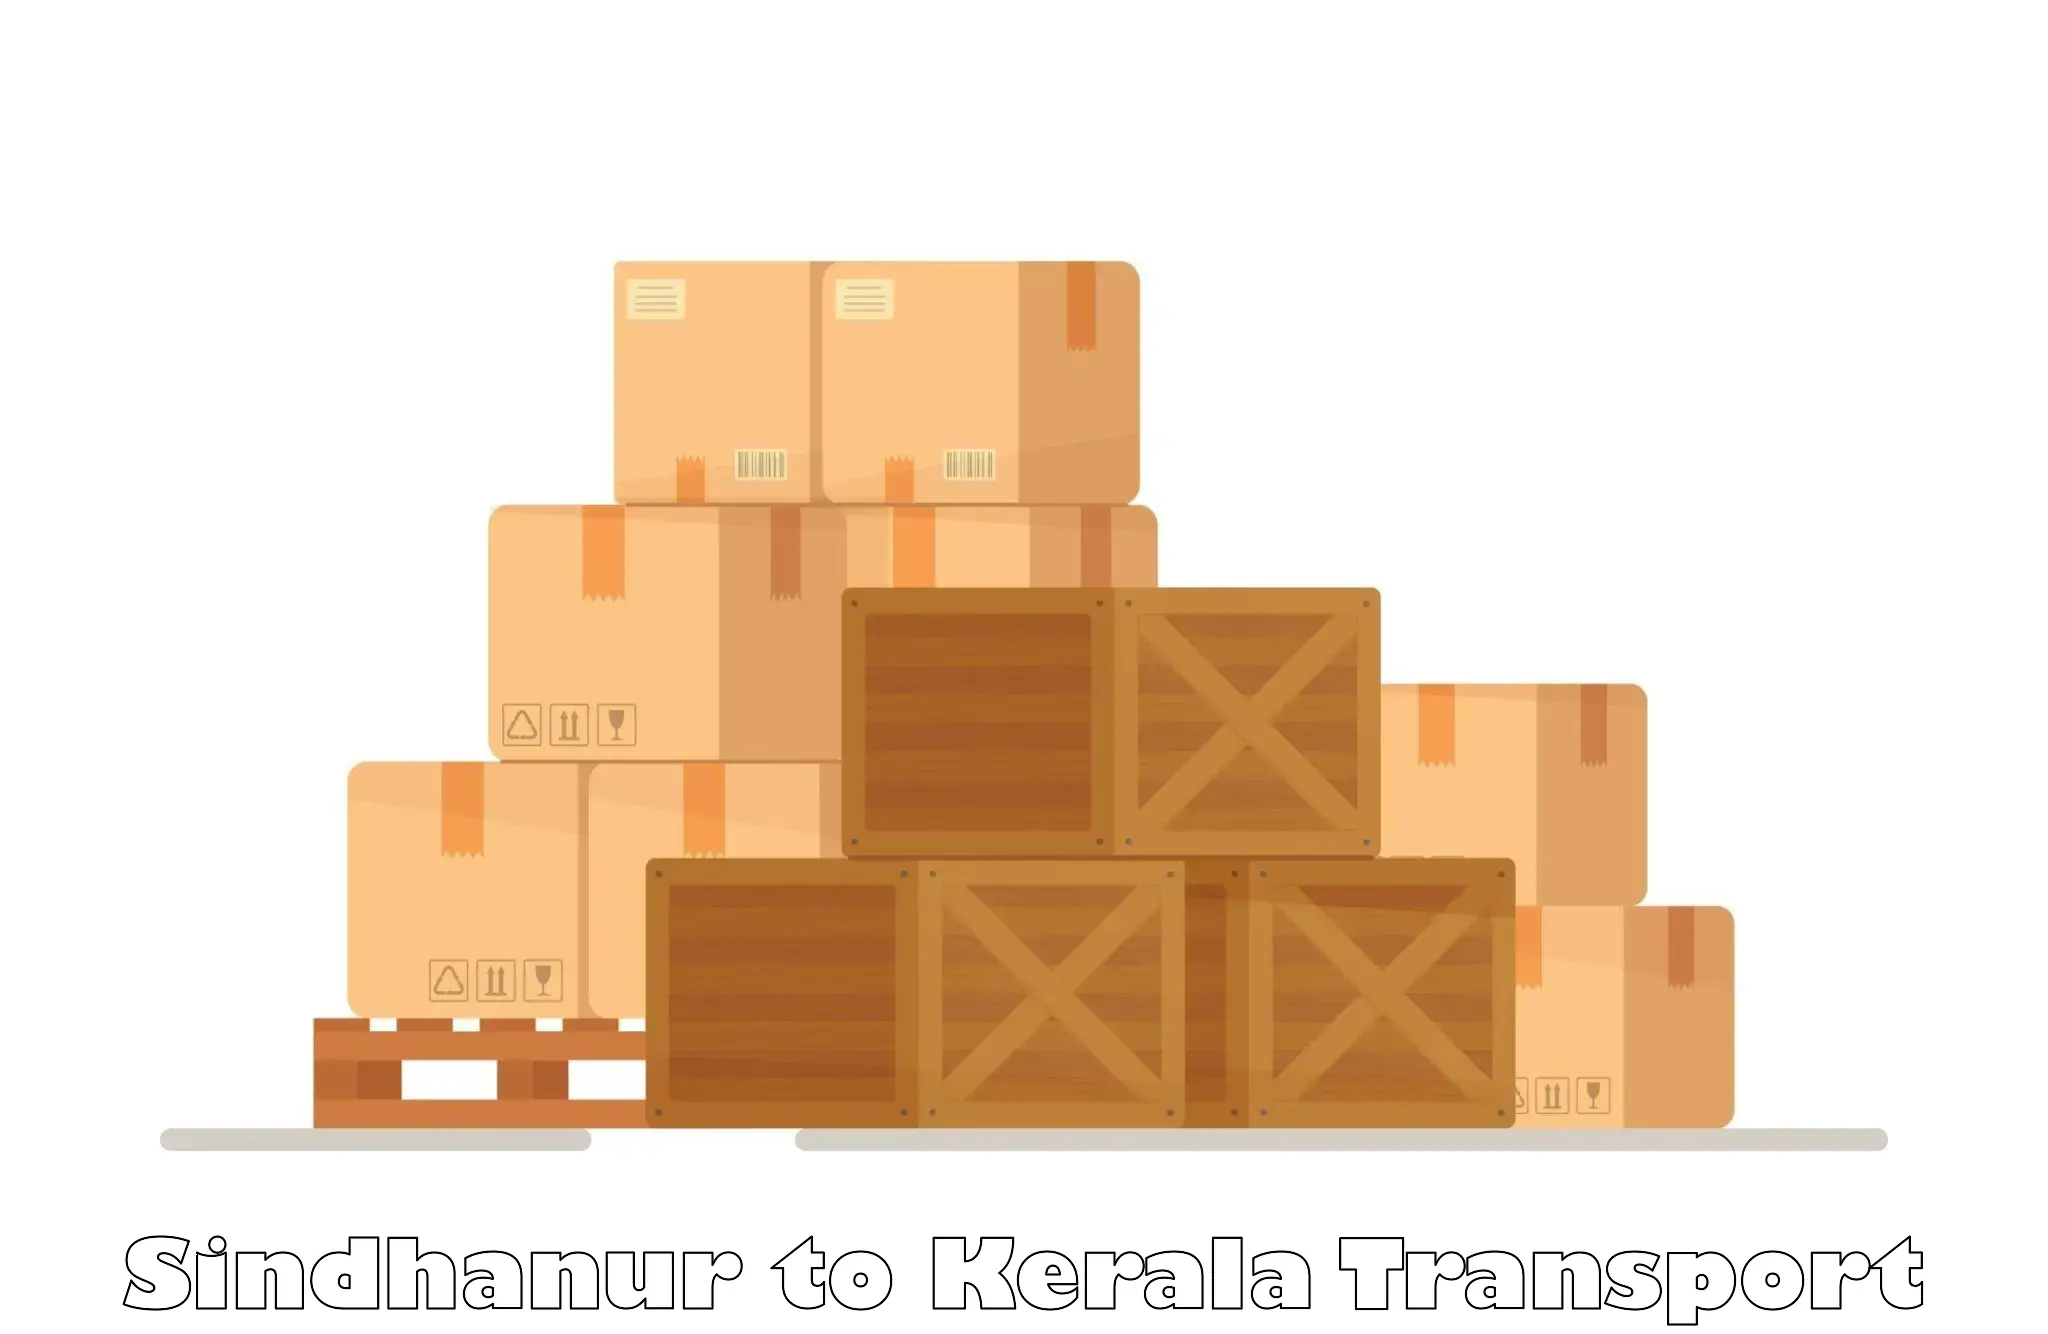 Online transport booking Sindhanur to Poinachi